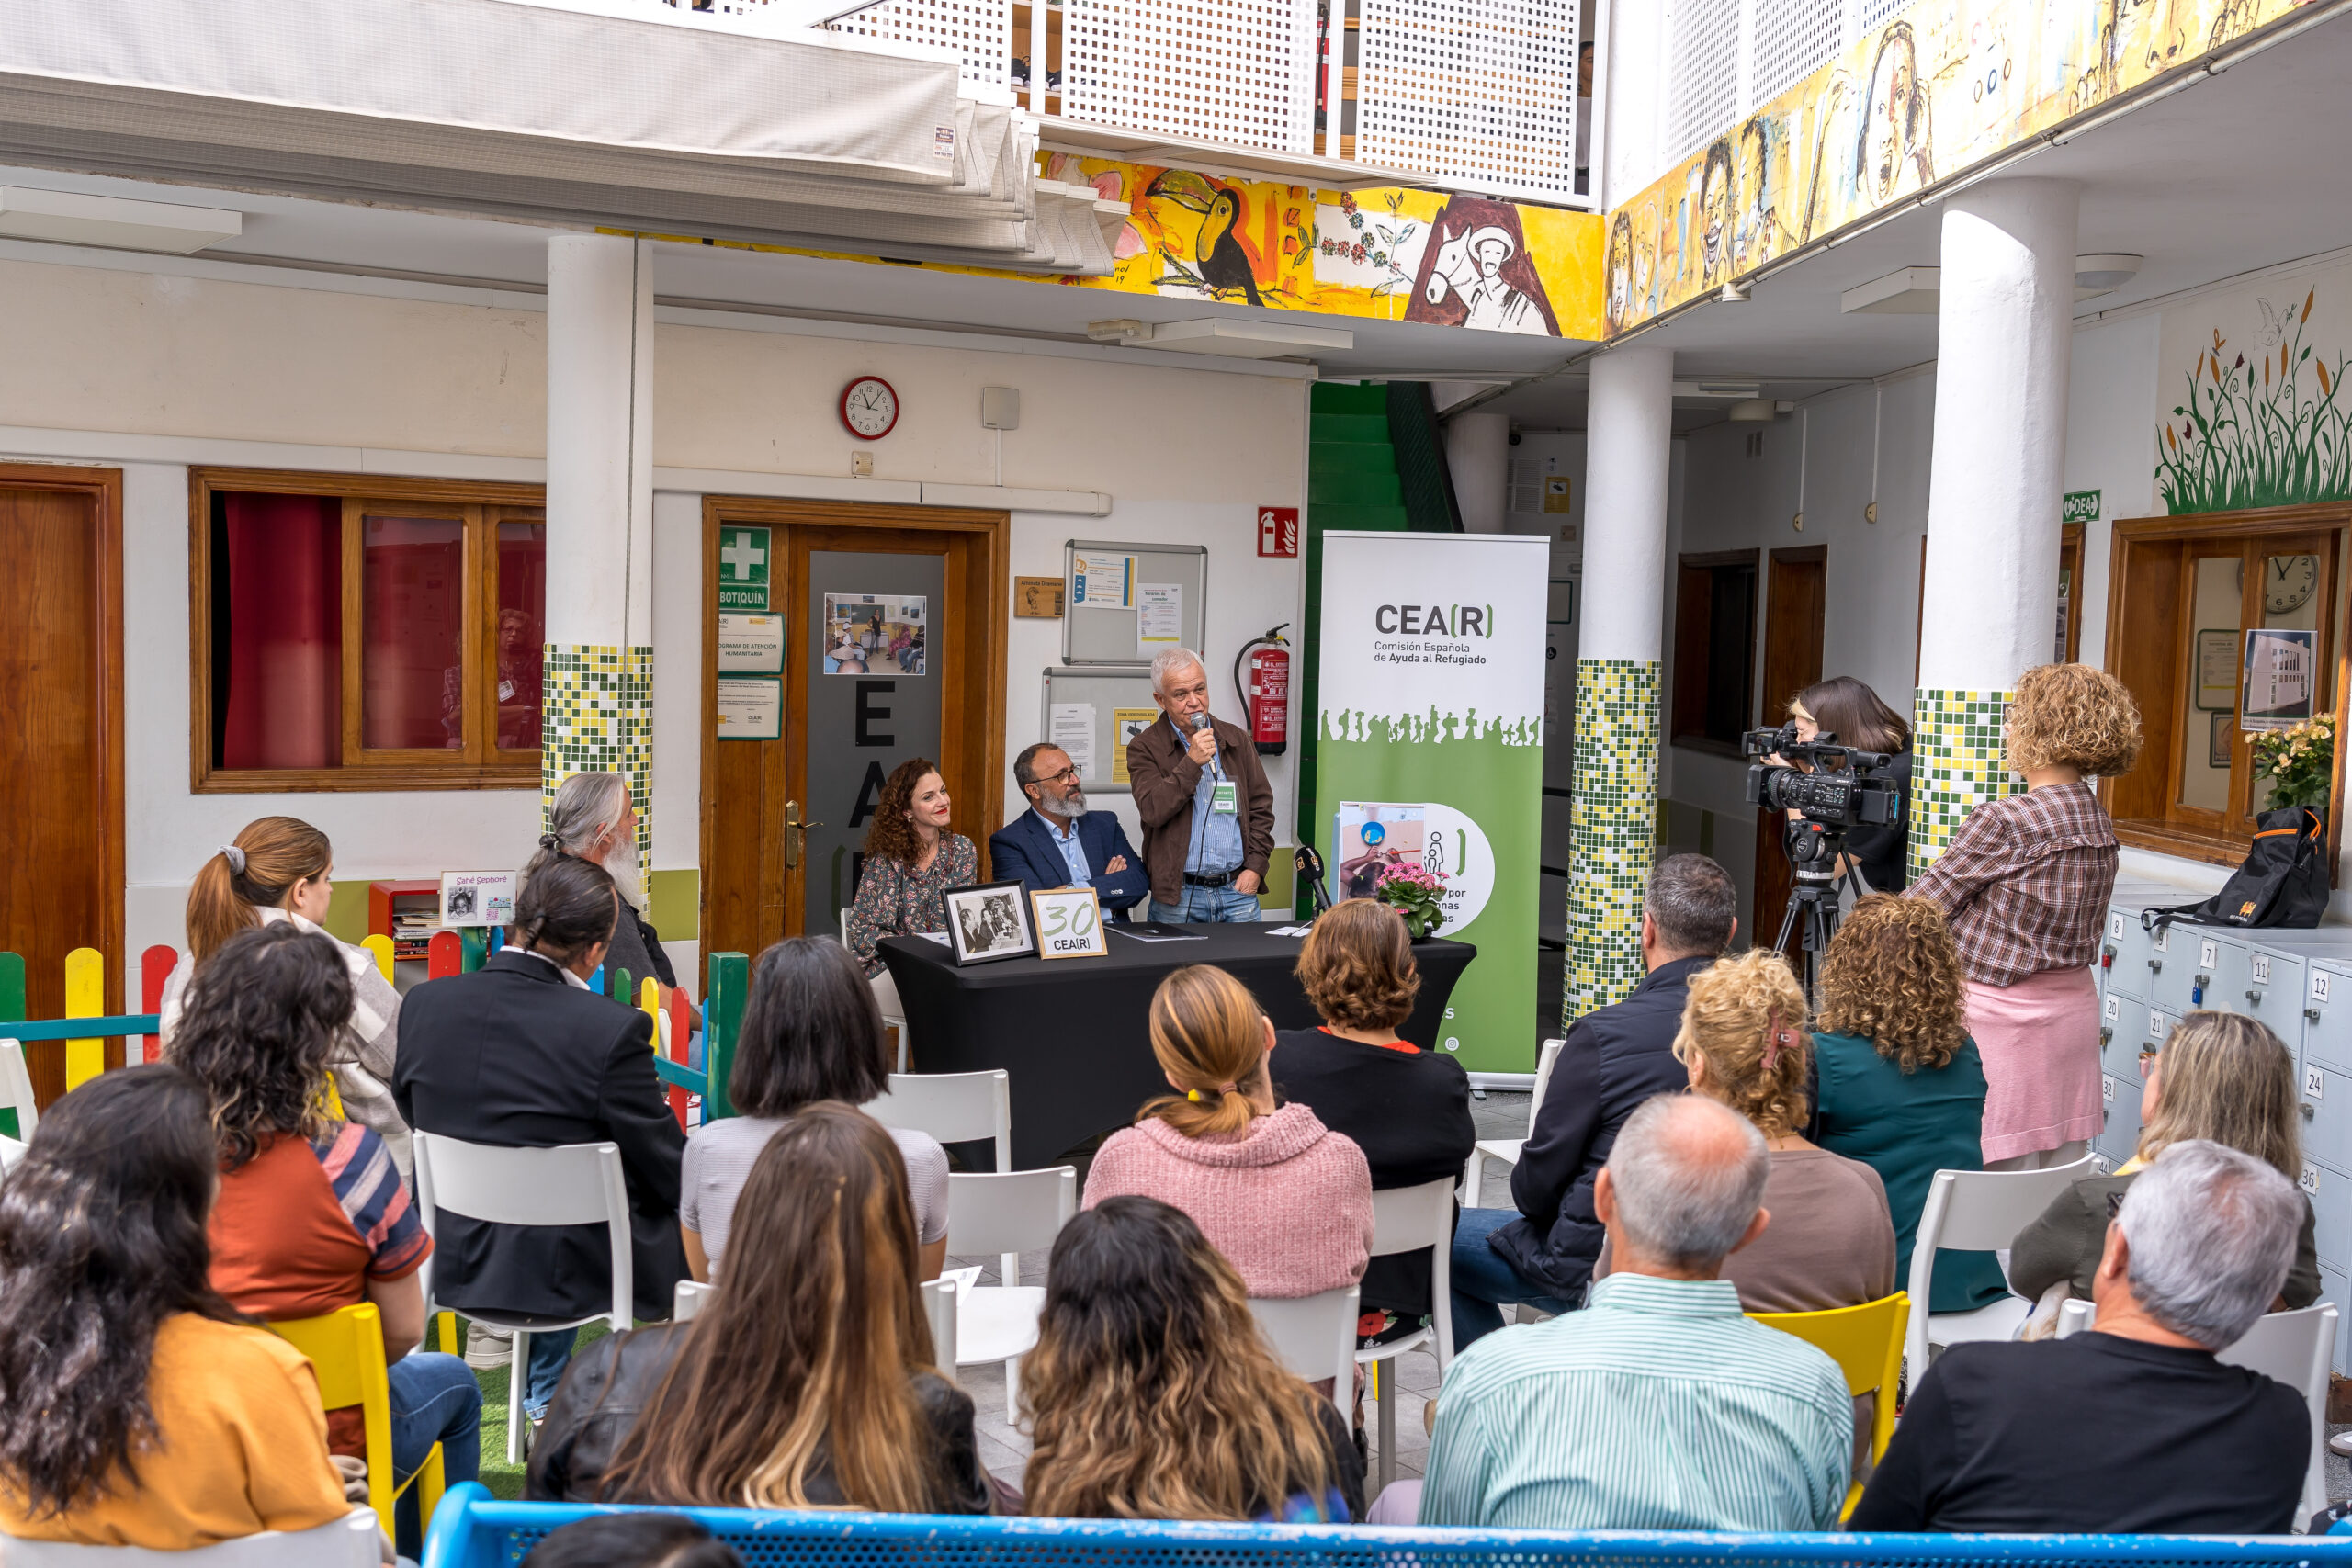 Francisco García felicita a CEAR por “estos 30 años promoviendo la solidaridad e interculturalidad en el municipio”